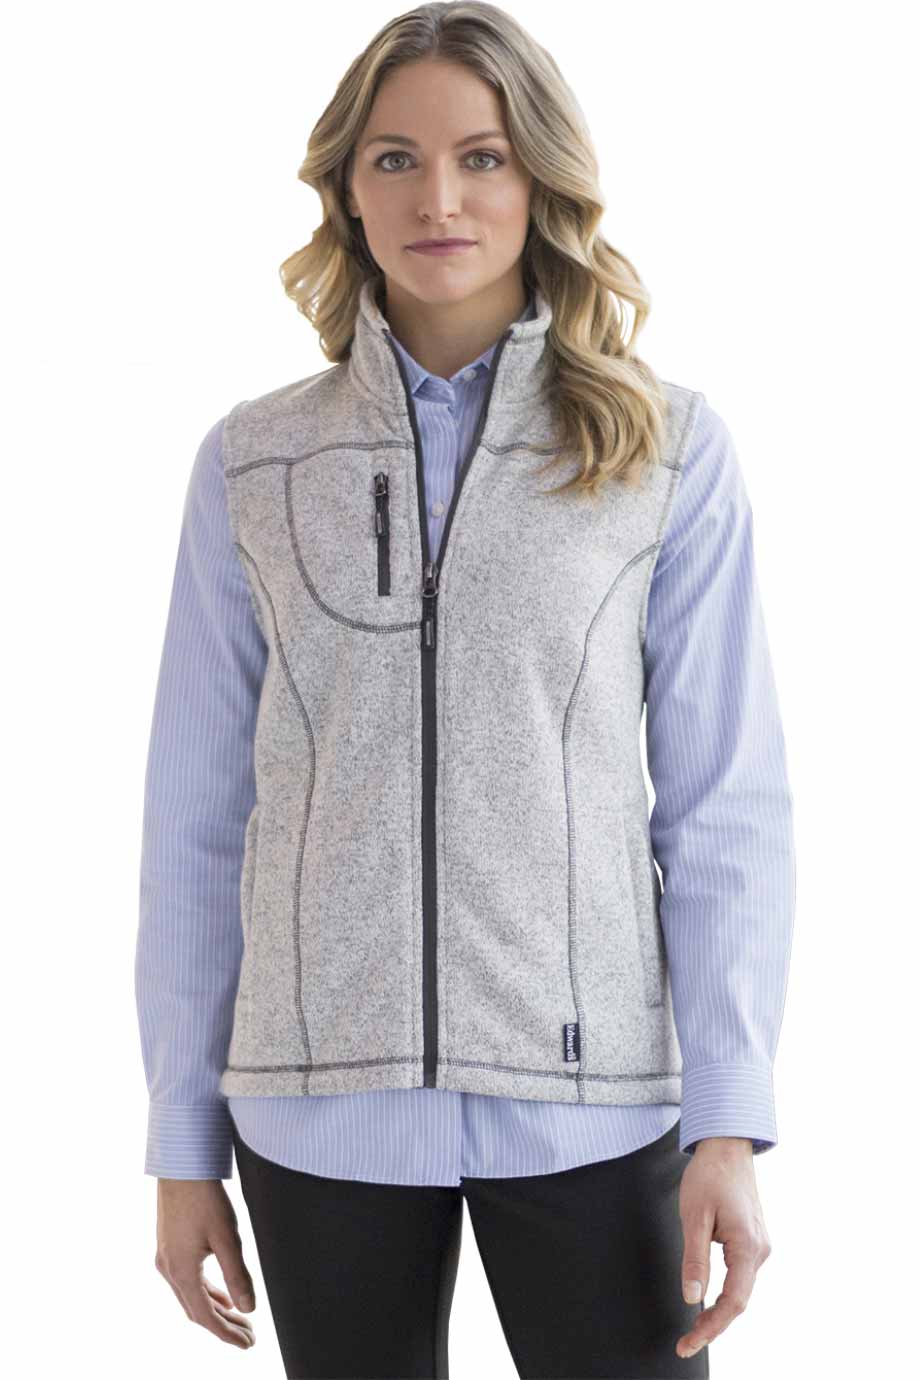 Edwards 6463 Women's Sweater Knit Fleece Vest – Valley West Uniforms